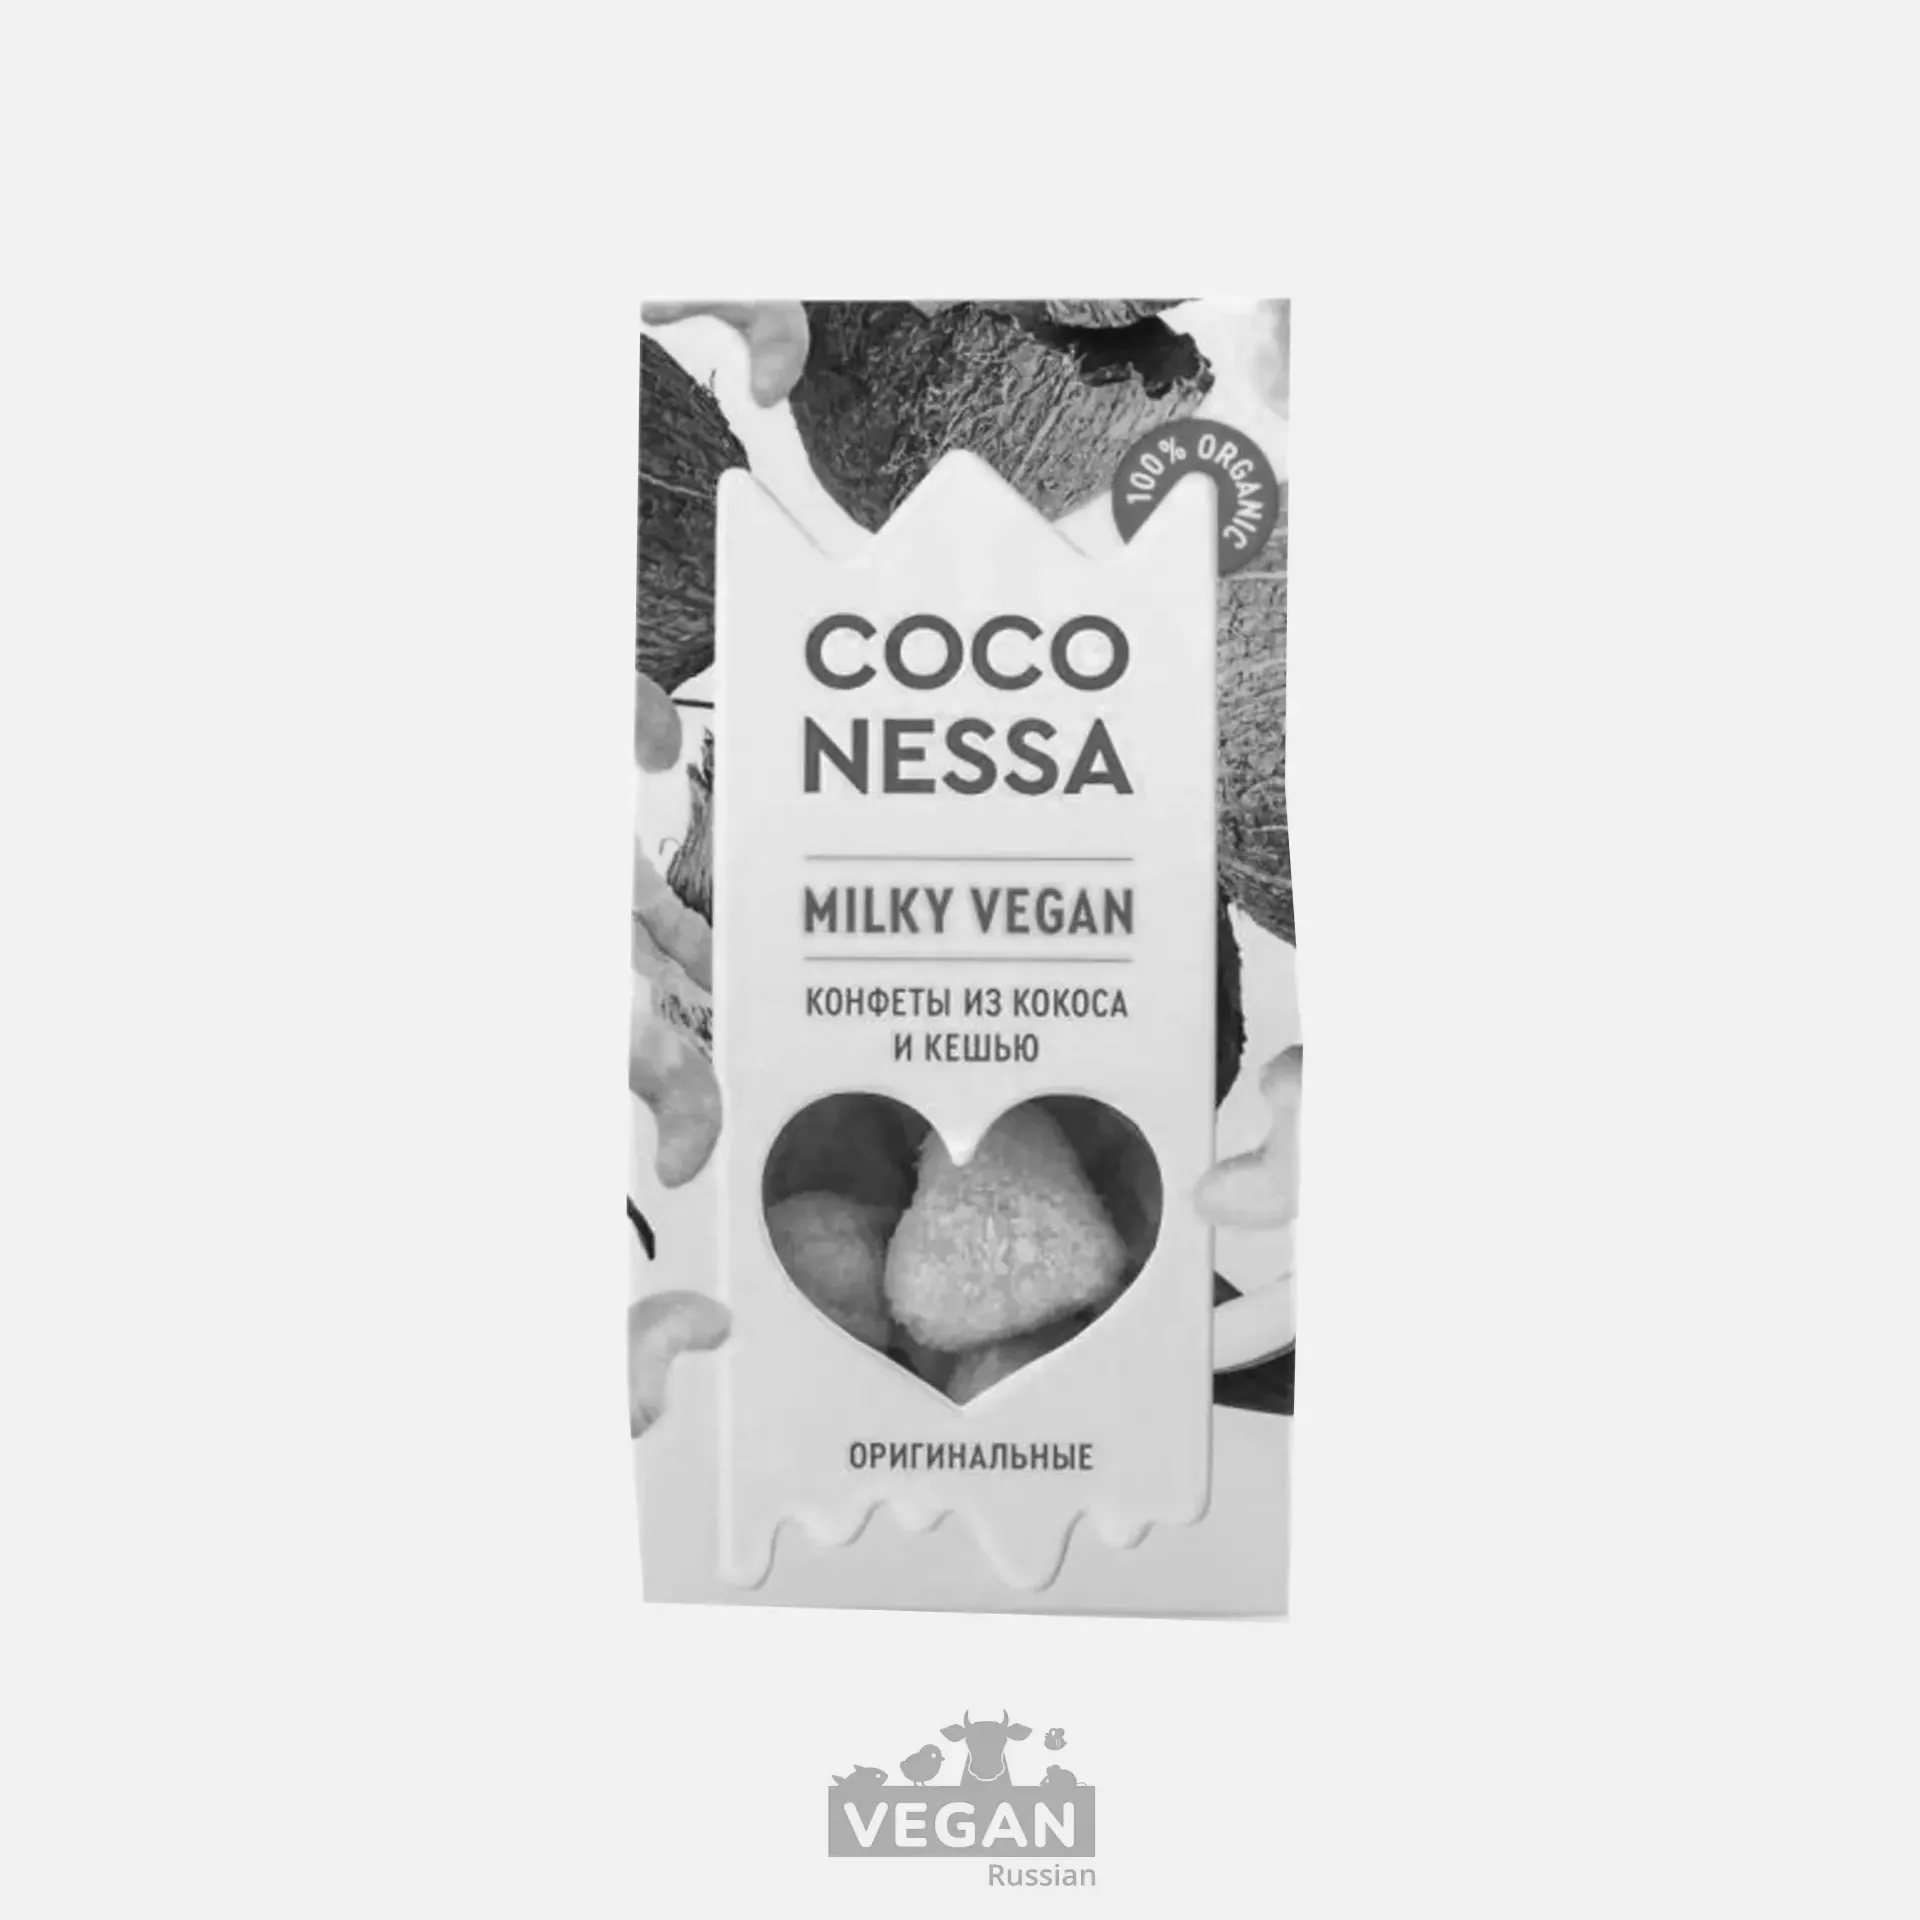 Архив: Конфеты кокосовые оригинальные Milky vegan Coconessa 90 г